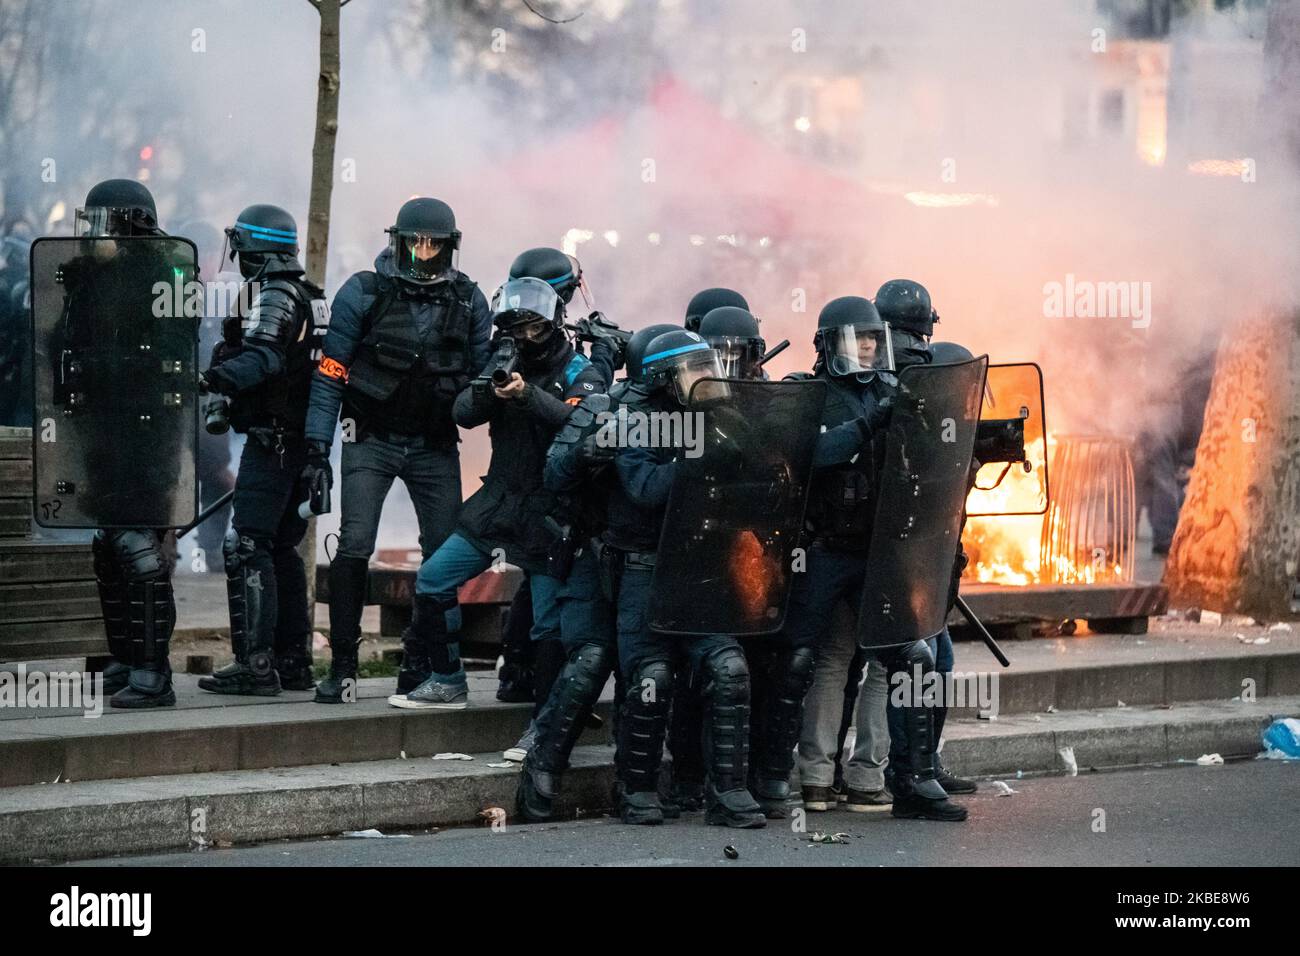 Las fuerzas de seguridad intervienen en una protesta contra la reforma de las pensiones del gobierno en París, Francia, el 11 de enero de 2020. (Foto de Jerome Gilles/NurPhoto) Foto de stock